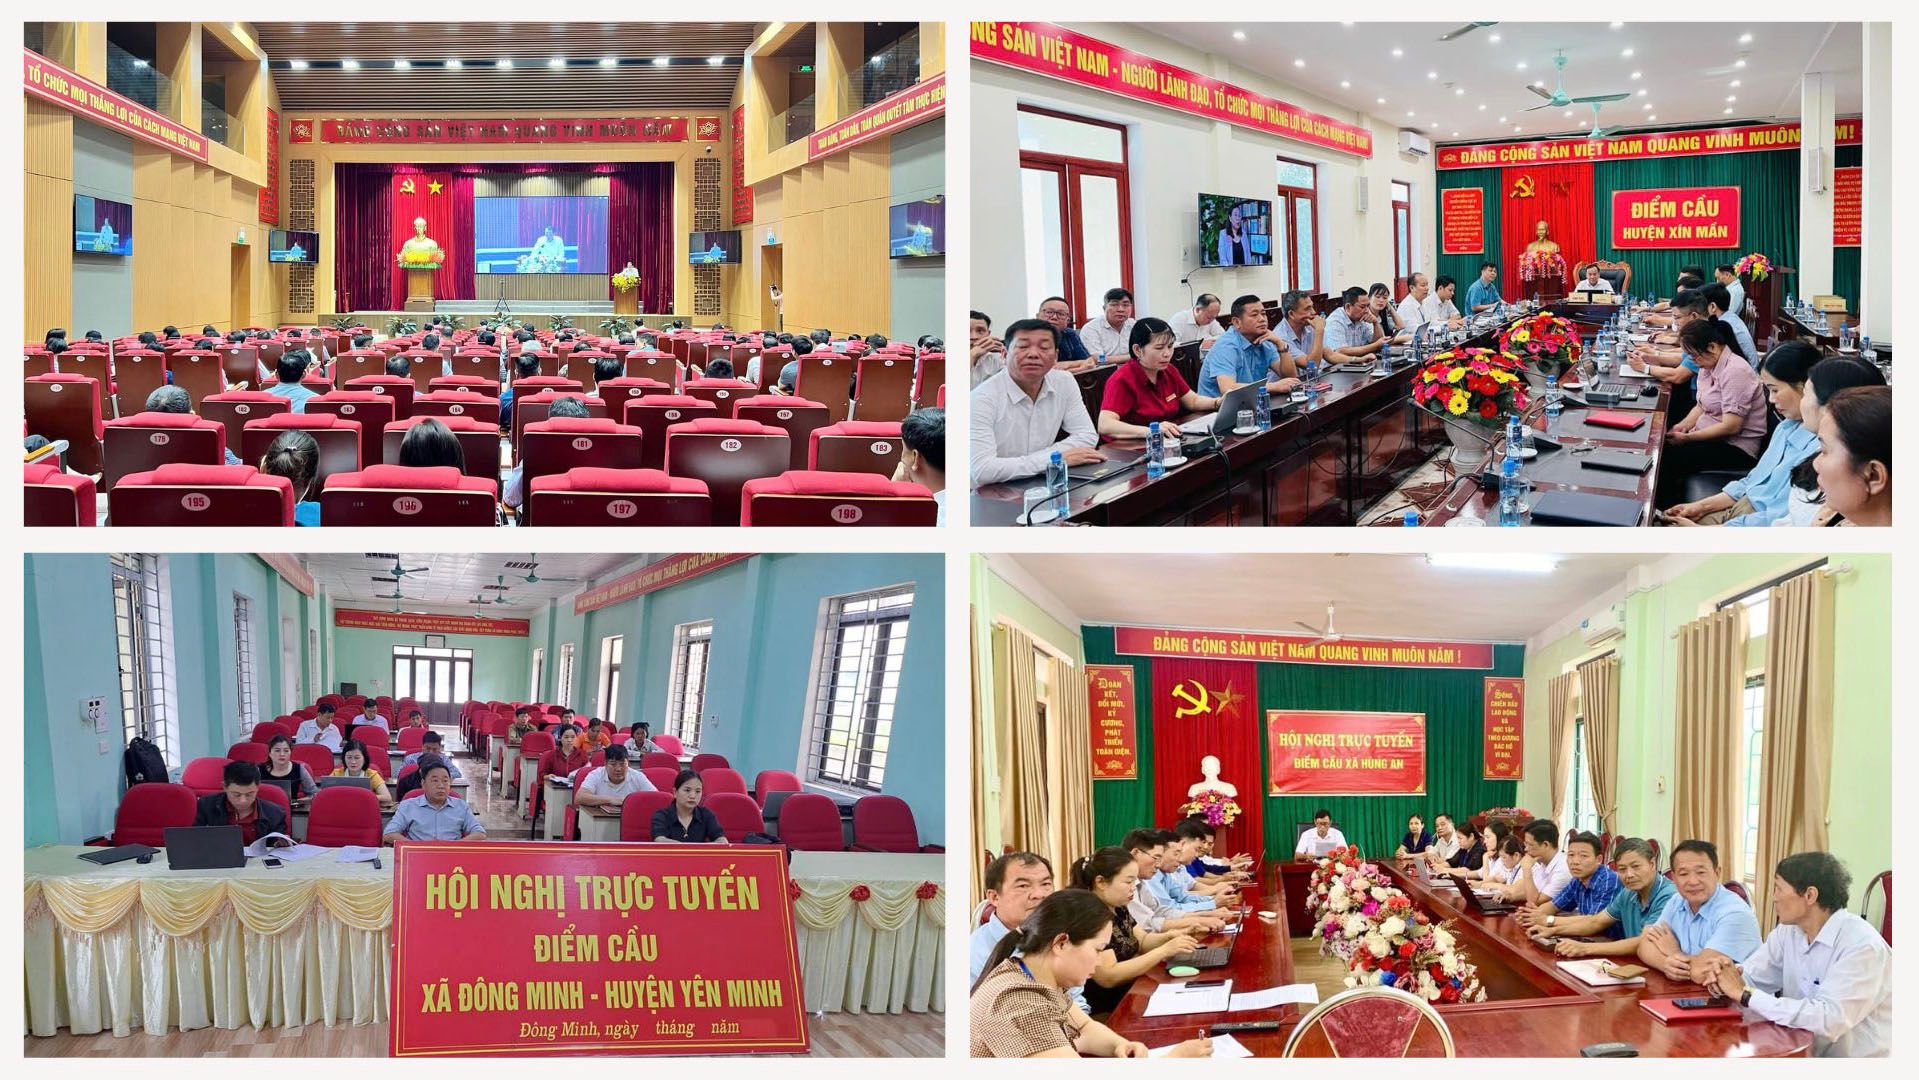 Hơn 6.000 cán bộ, đảng viên tỉnh Hà Giang quán triệt nội dung bài viết, tác phẩm của Tổng Bí thư Nguyễn Phú Trọng